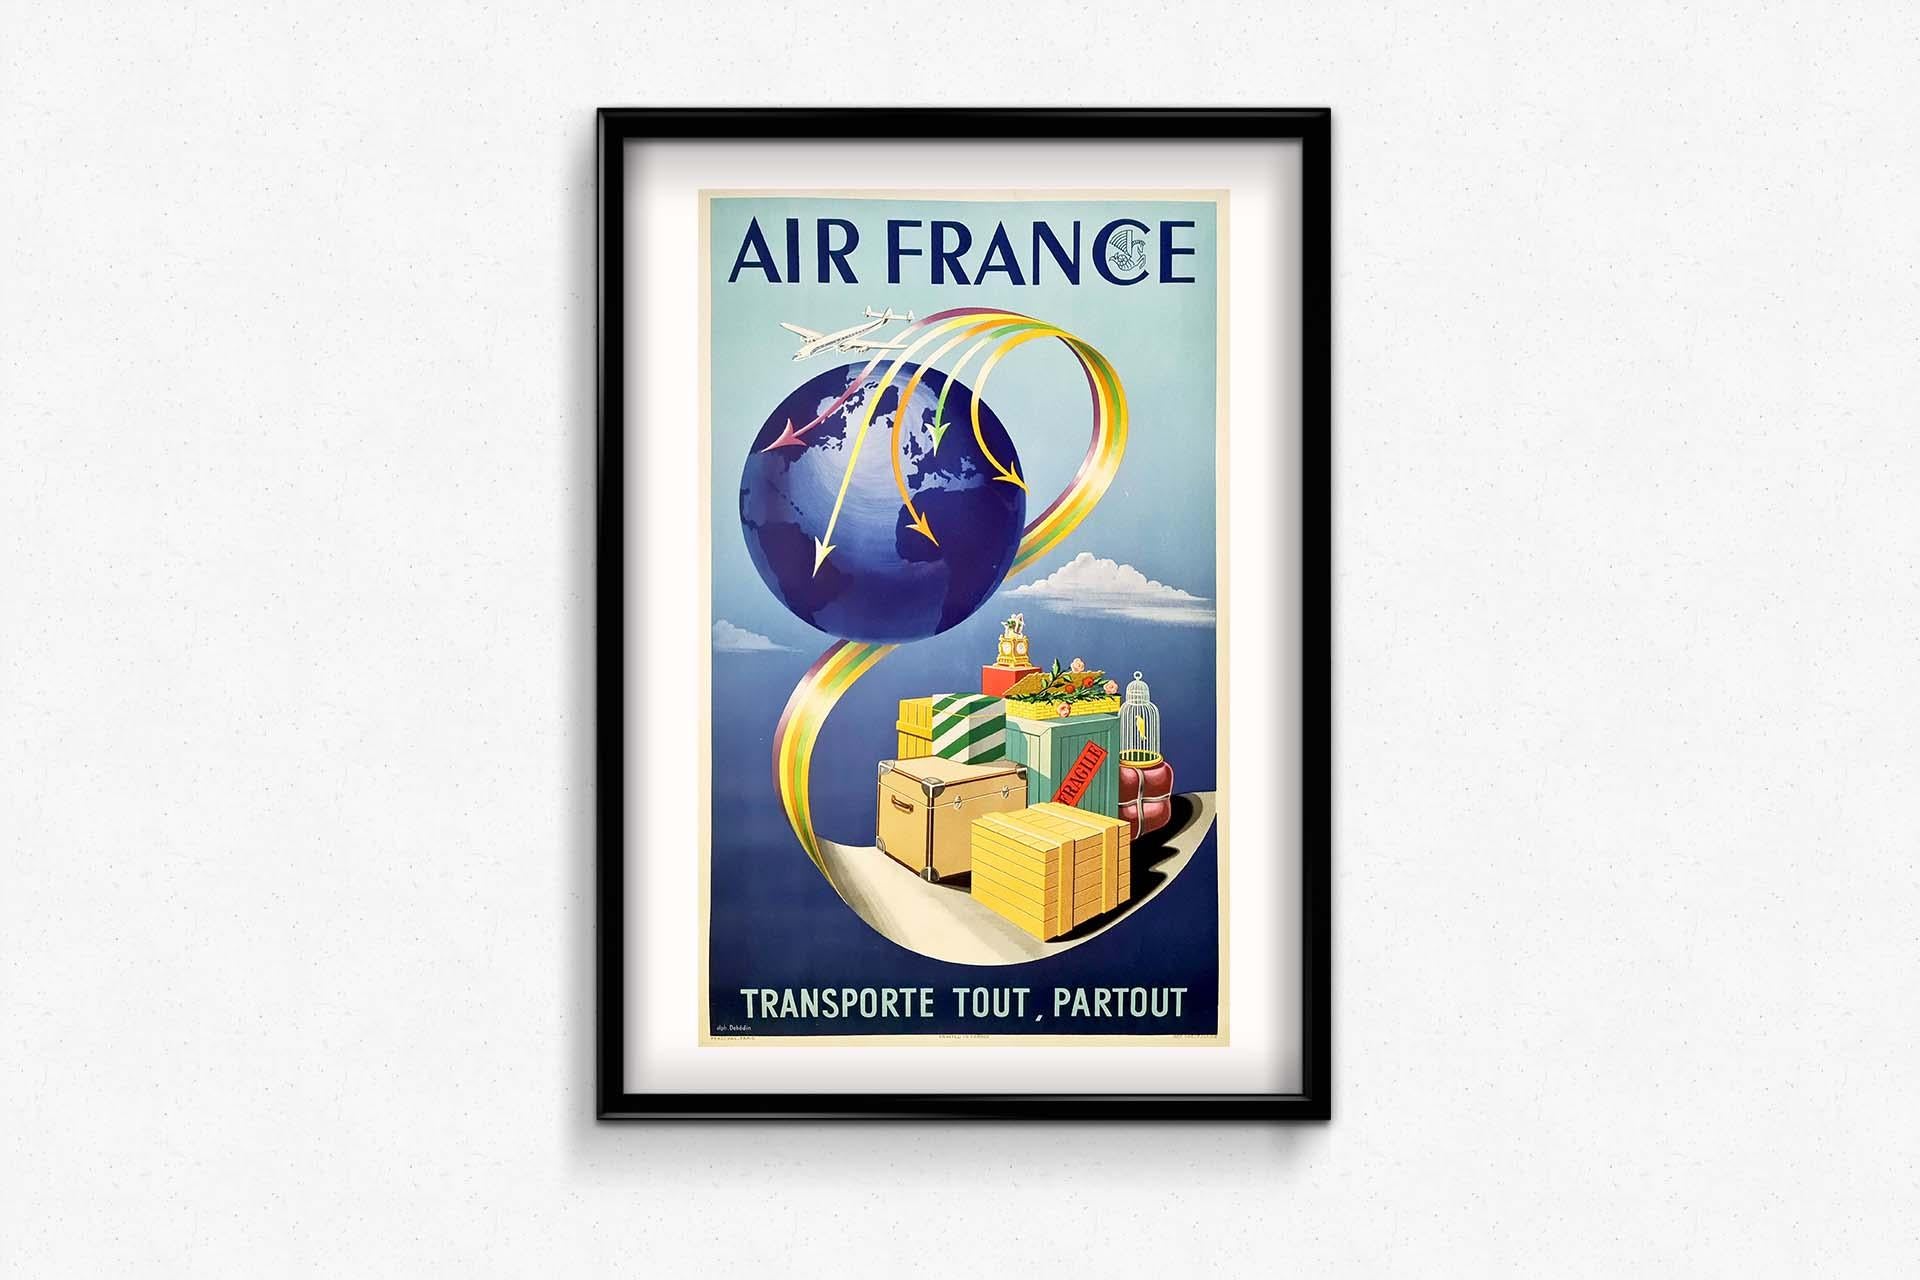 1952 Originalplakat, entworfen von Dehdin für Air France - Airlines im Angebot 2